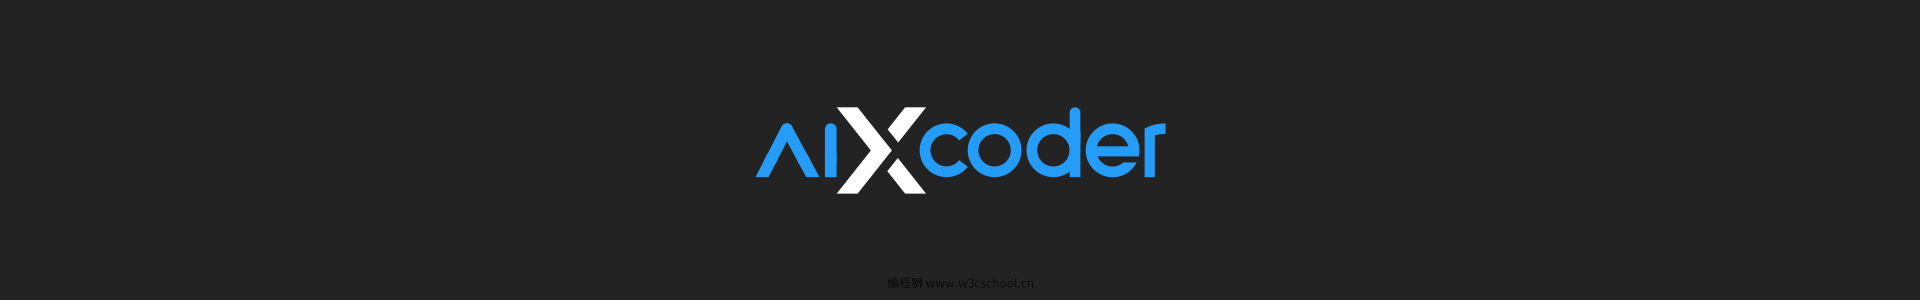 aiXcoder logo